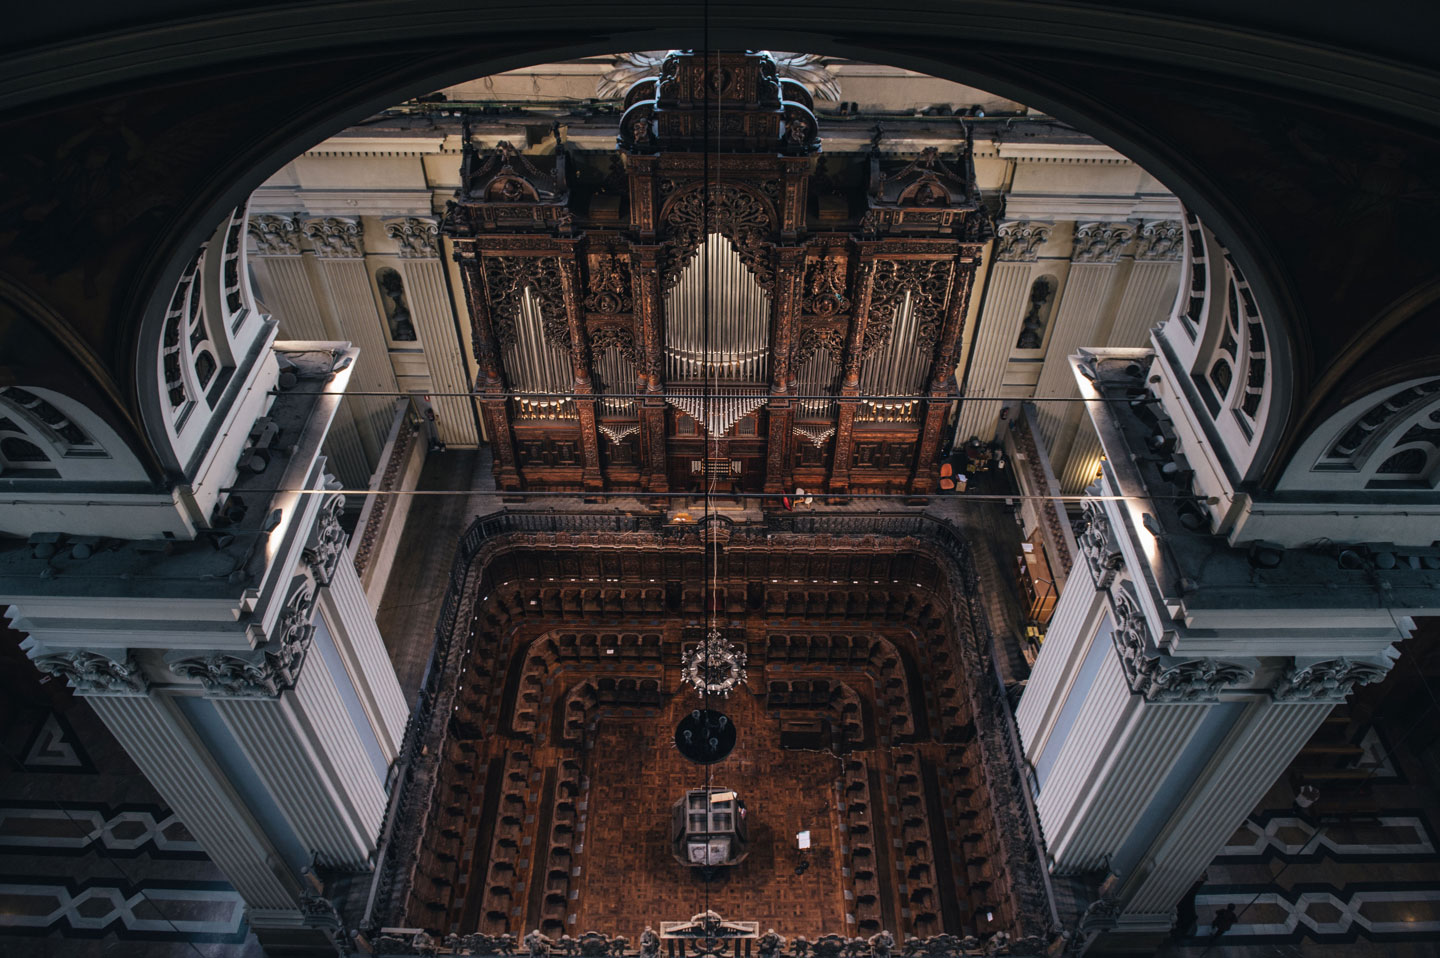 Vista superior del órgano de la catedral basílica del Pilar